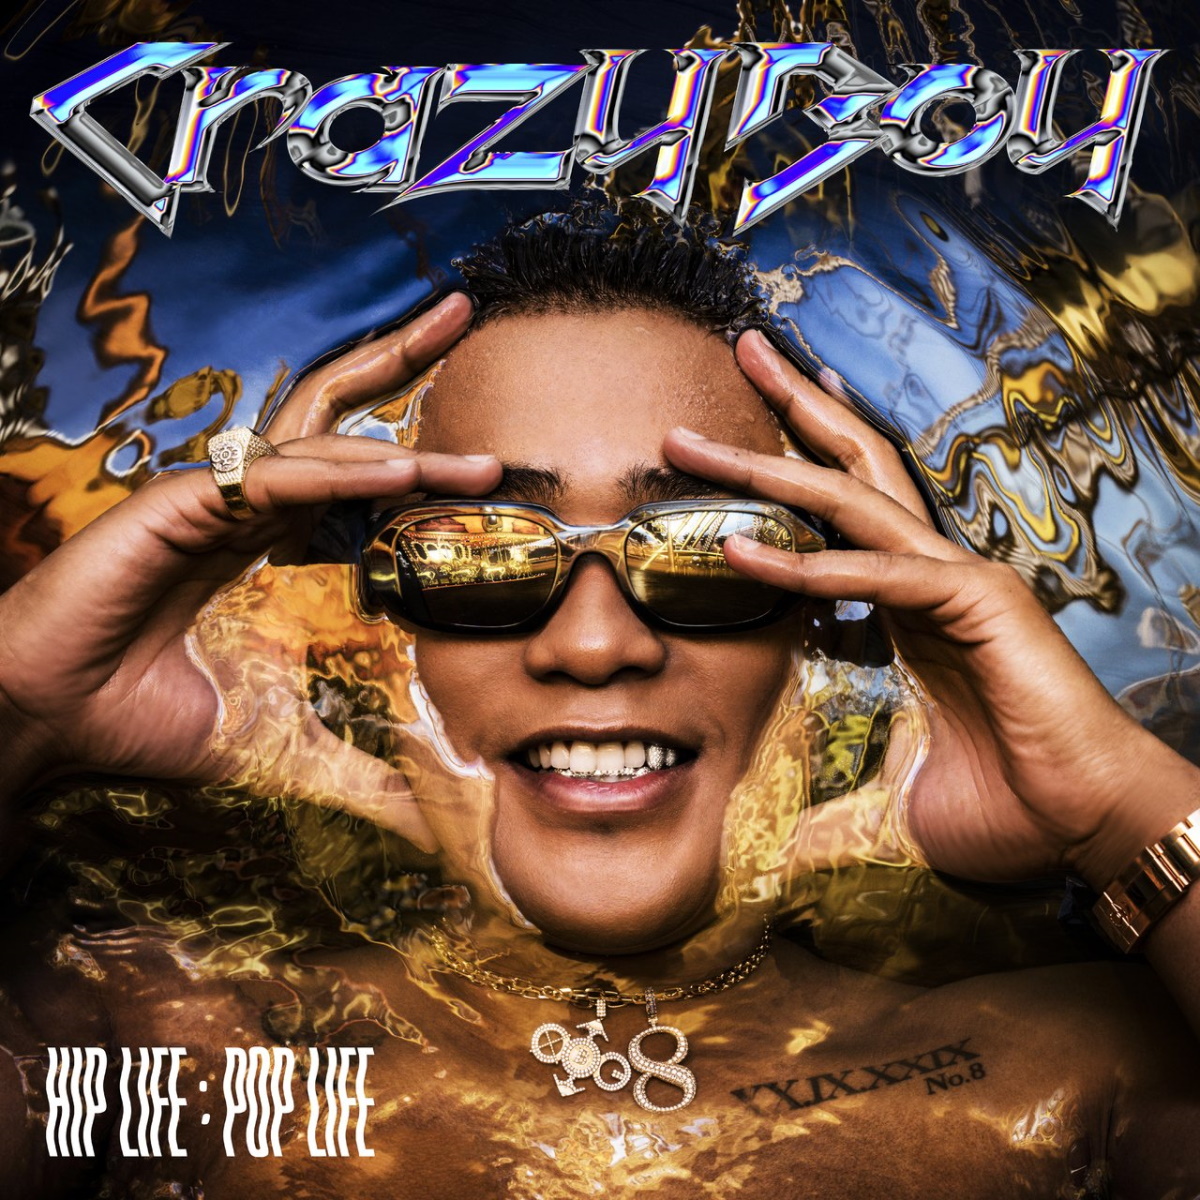 『CrazyBoy - Damn Girl (feat. Jackson Wang) 歌詞』収録の『HIP LIFE：POP LIFE』ジャケット